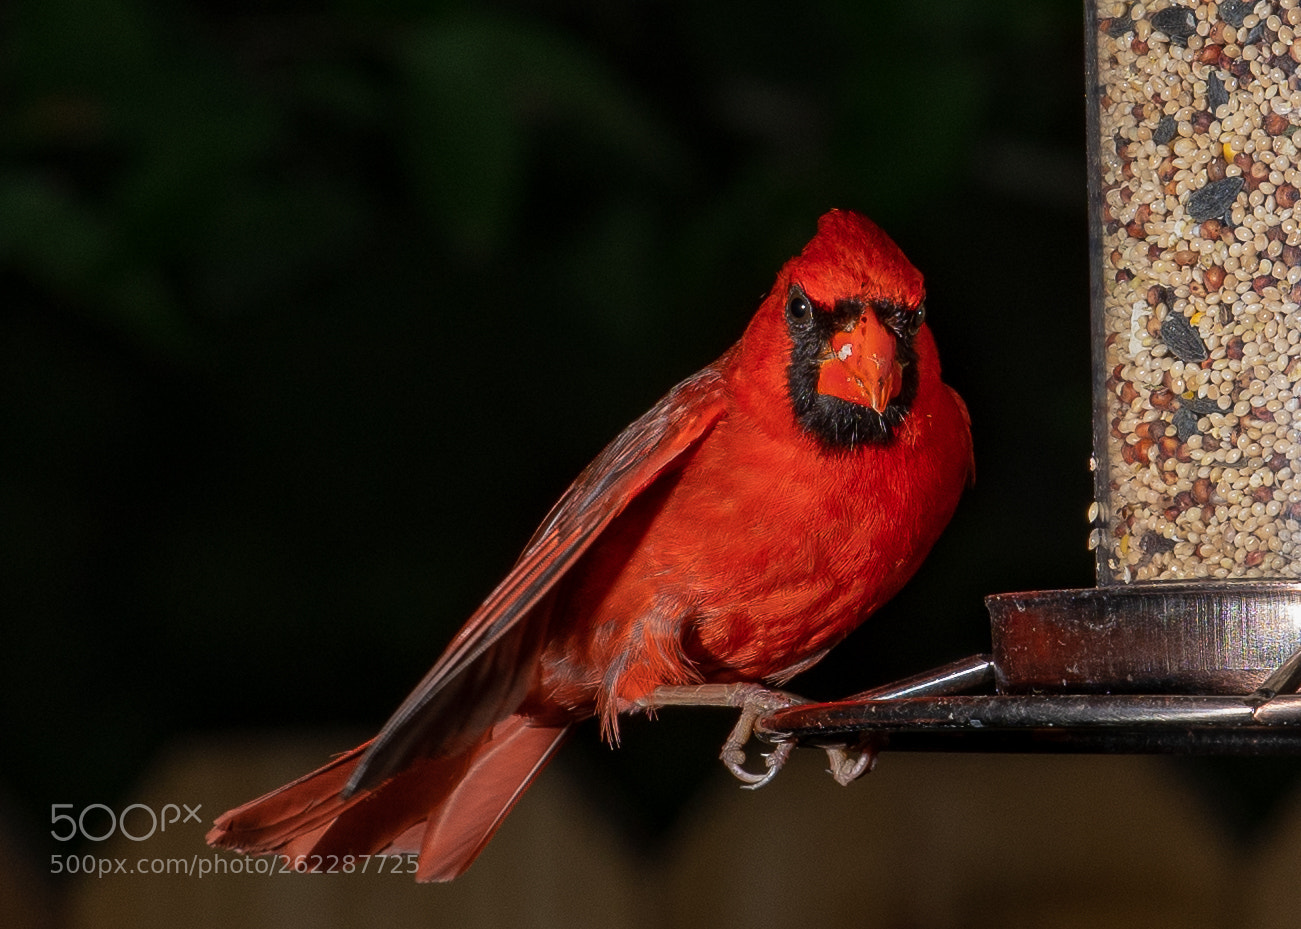 Nikon D500 sample photo. An angry looking cardinal photography